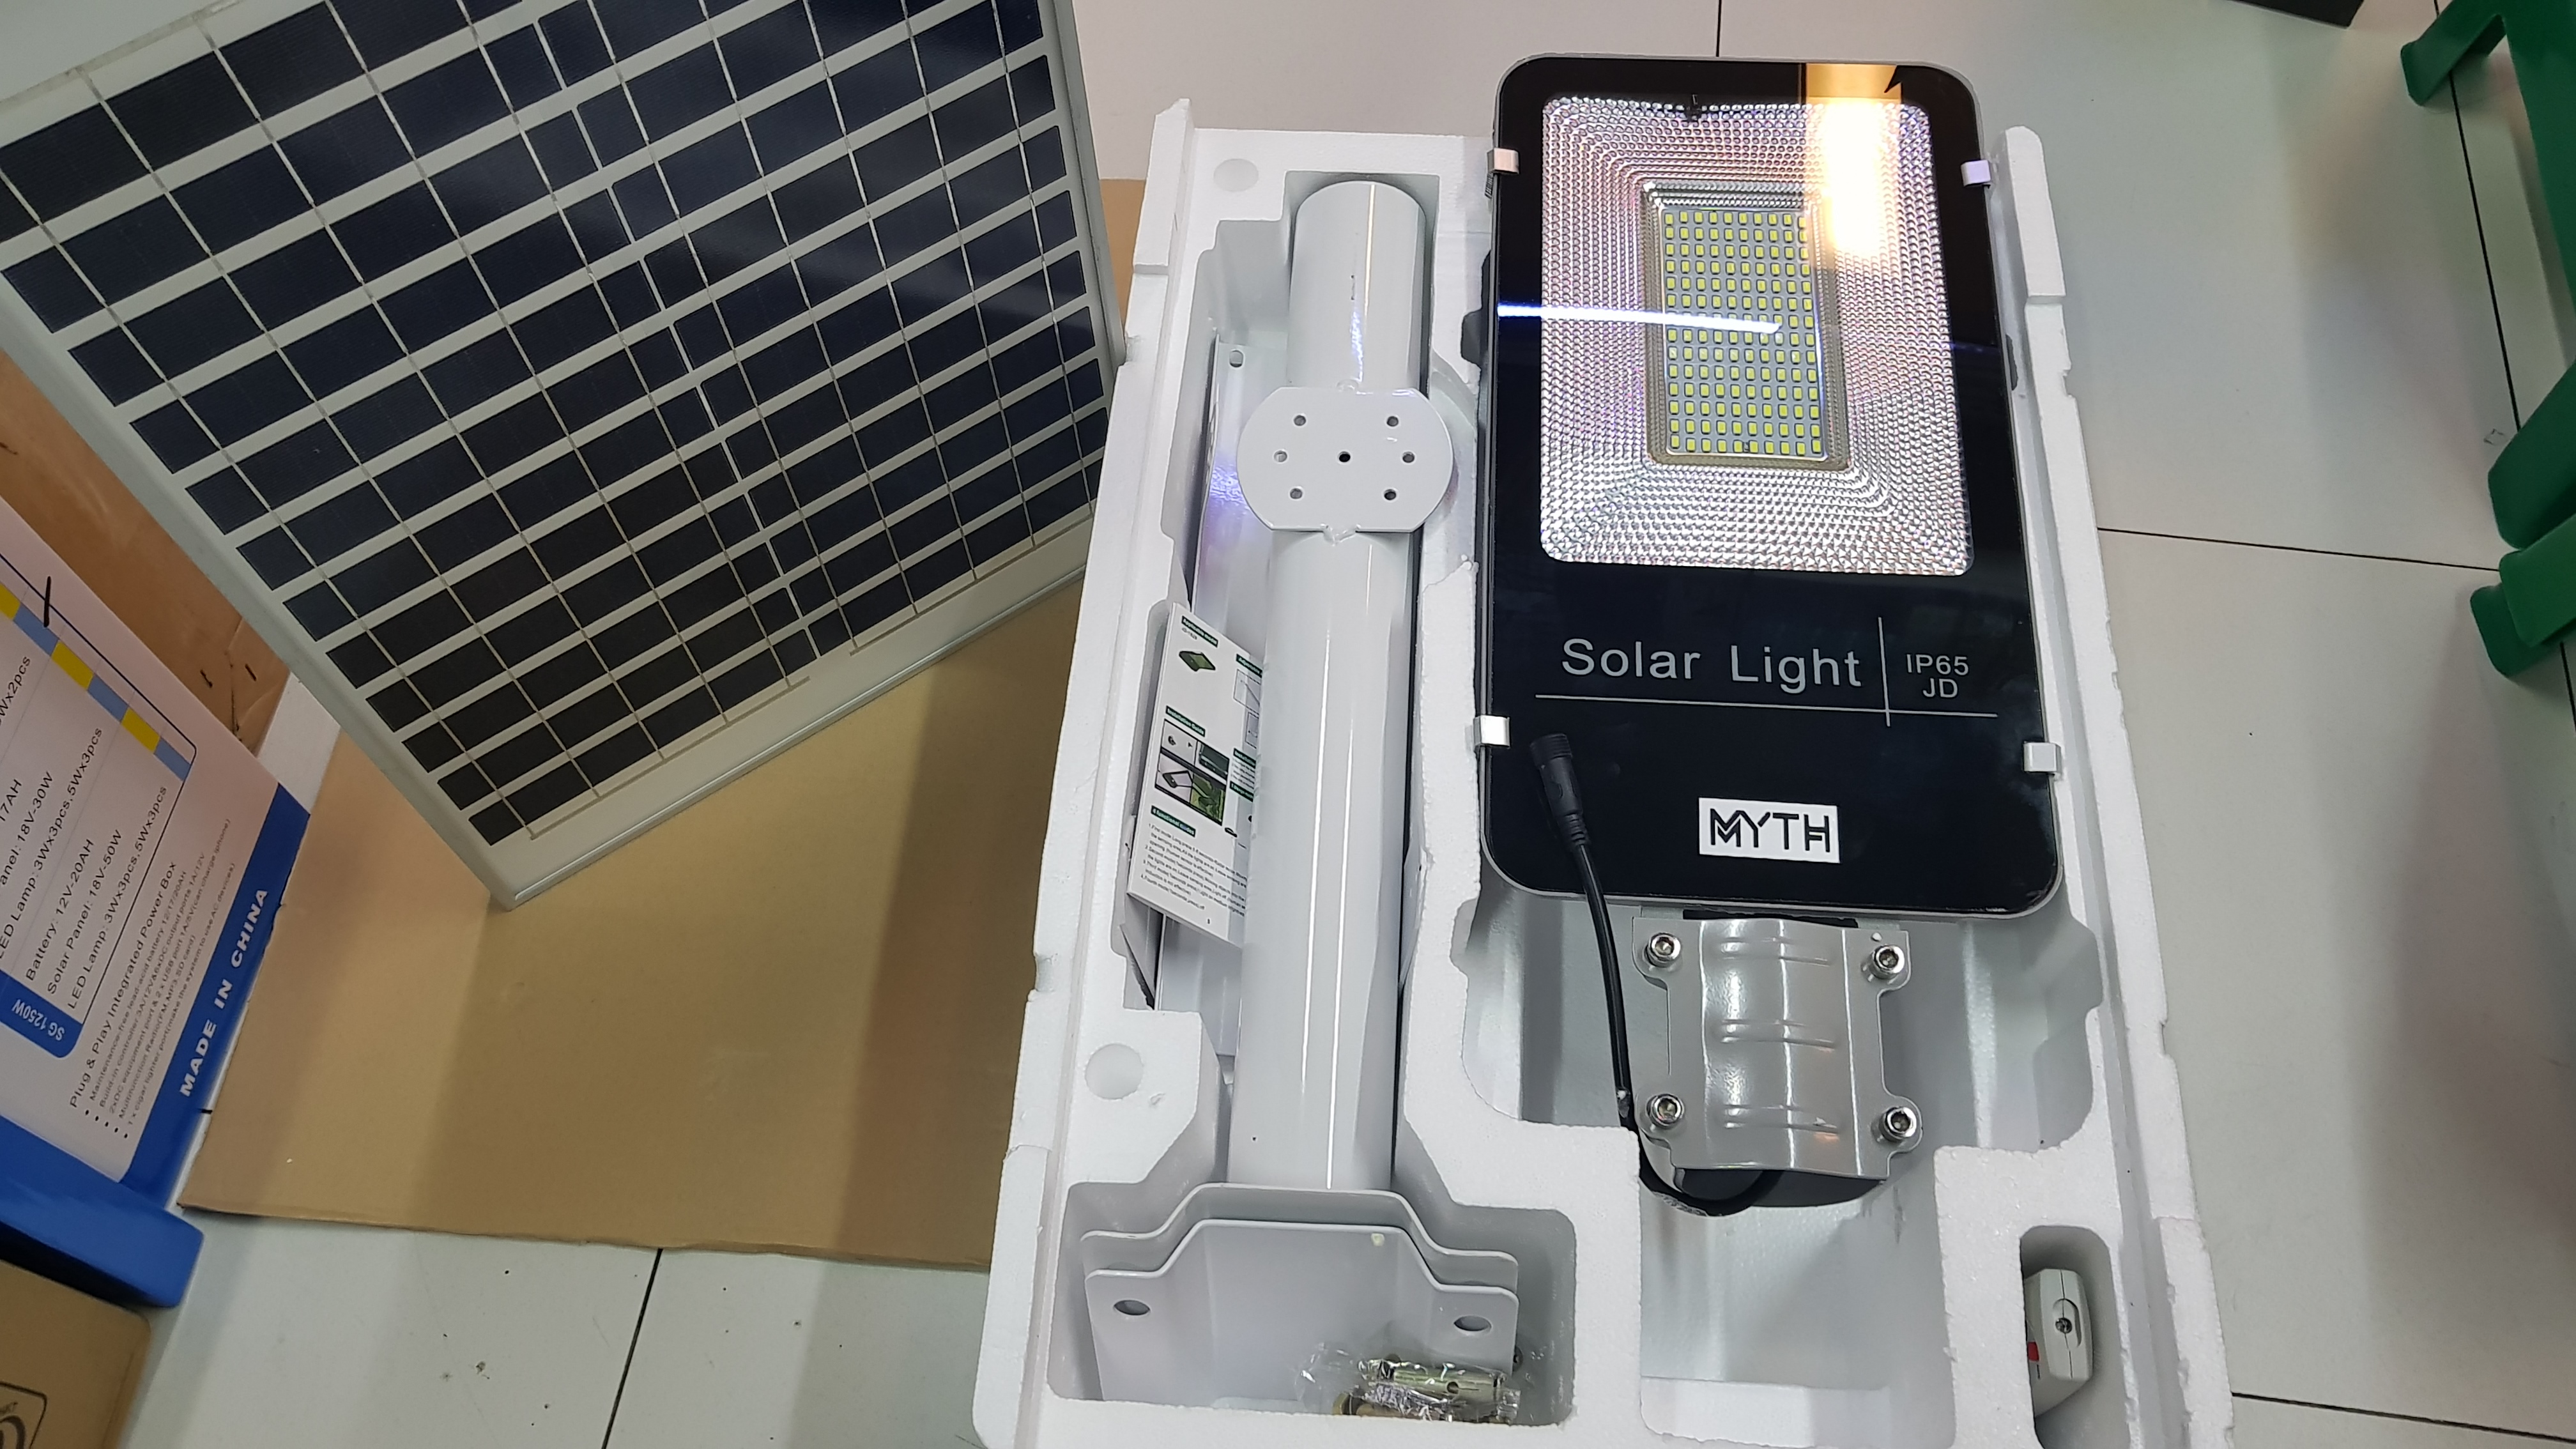 PJU LED Solar Cell Two In One 70 Watt